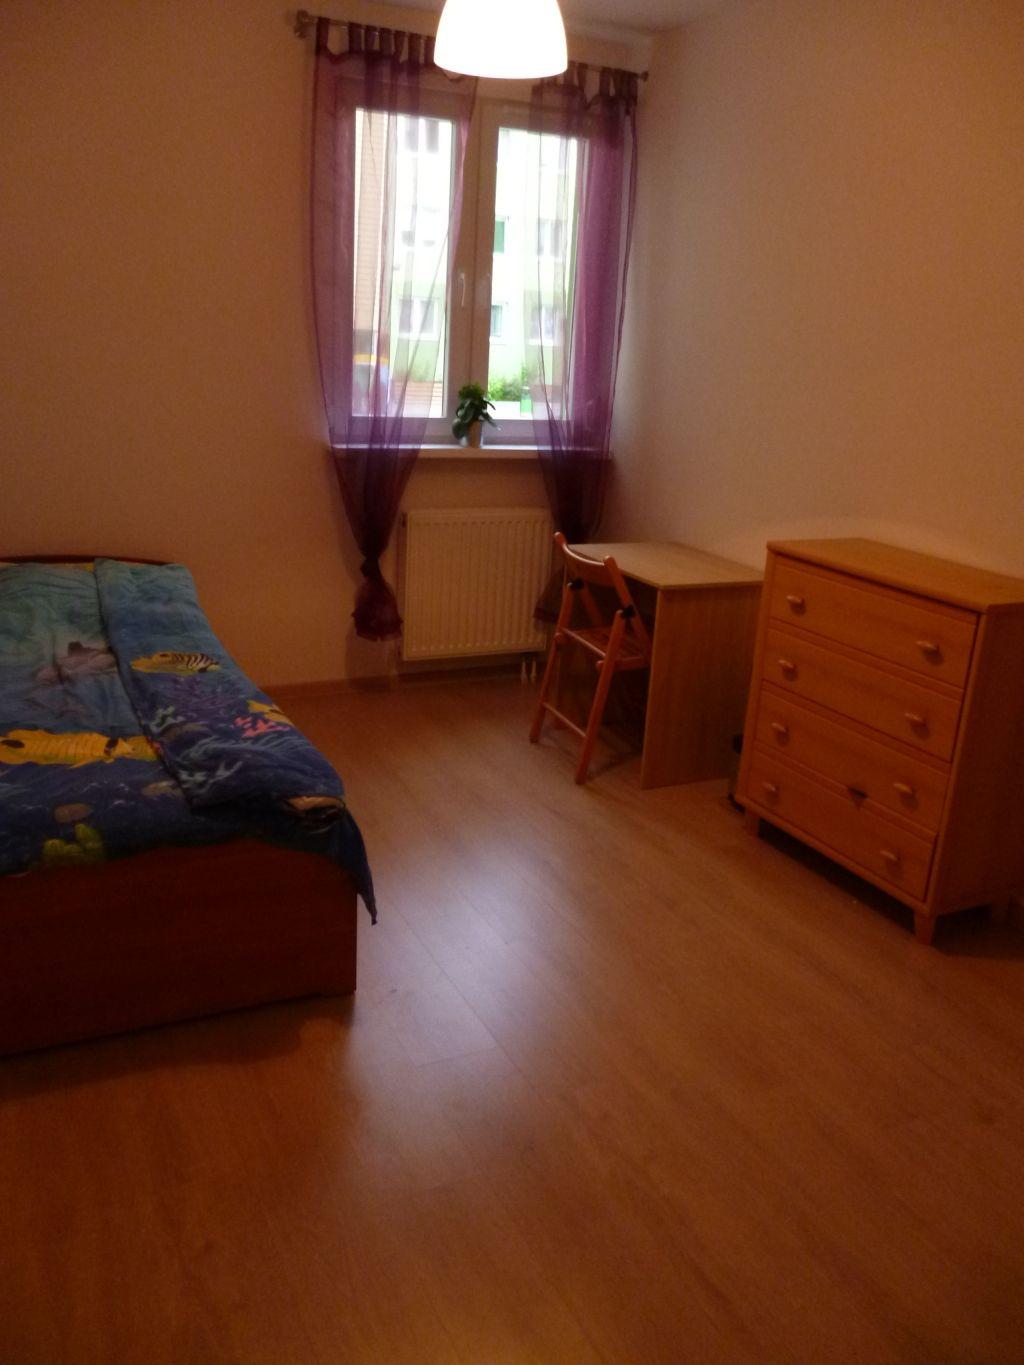 Przytulny pokój 1-osobowy (room for rent for student), Wrocław, dolnośląskie